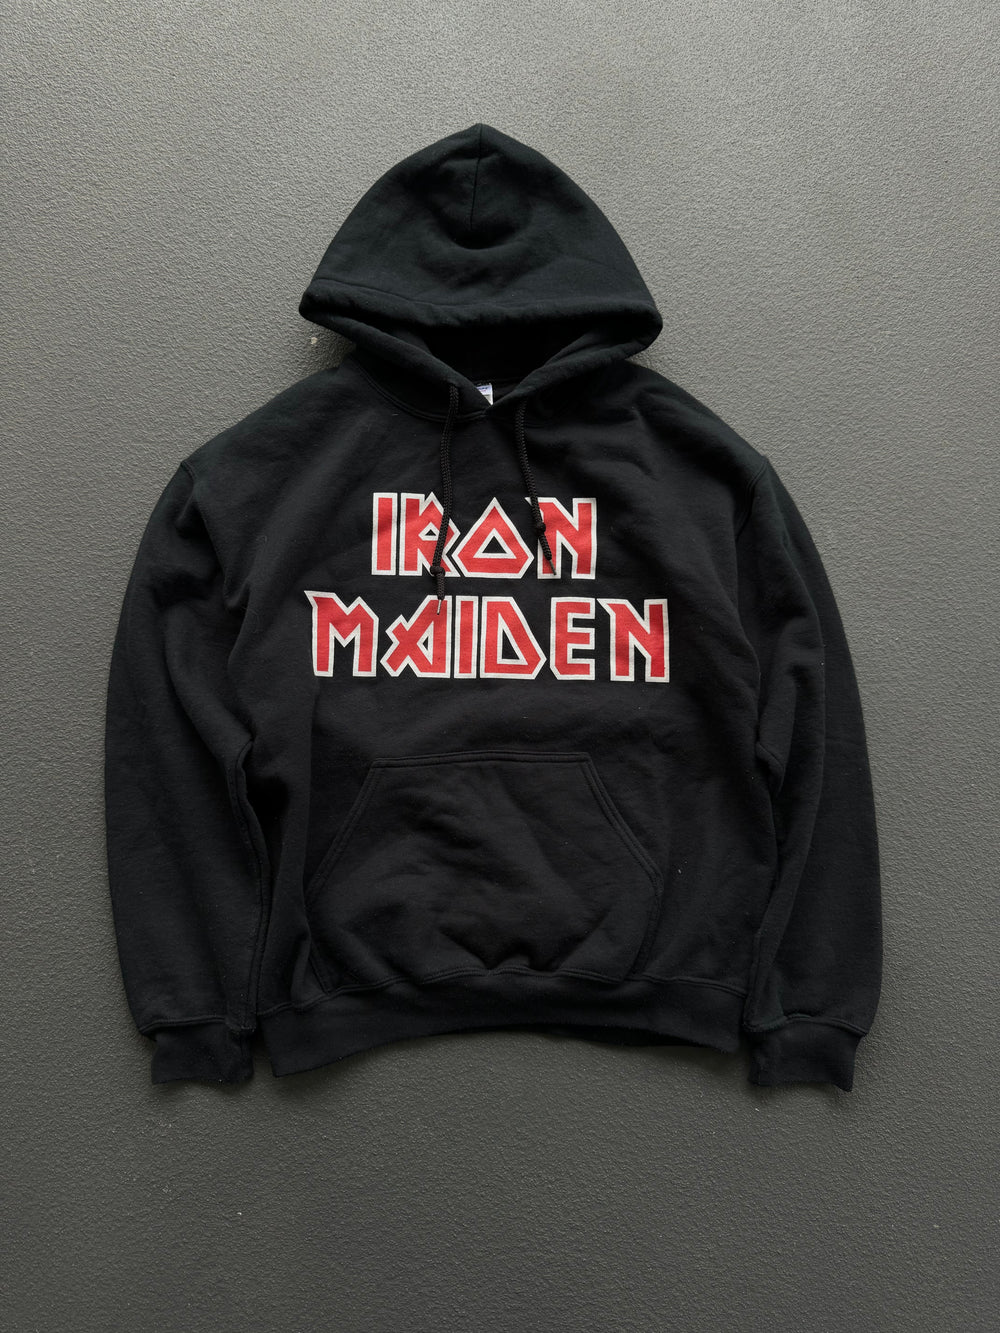 Vintage 90s Iron Maiden Hoodie (M)